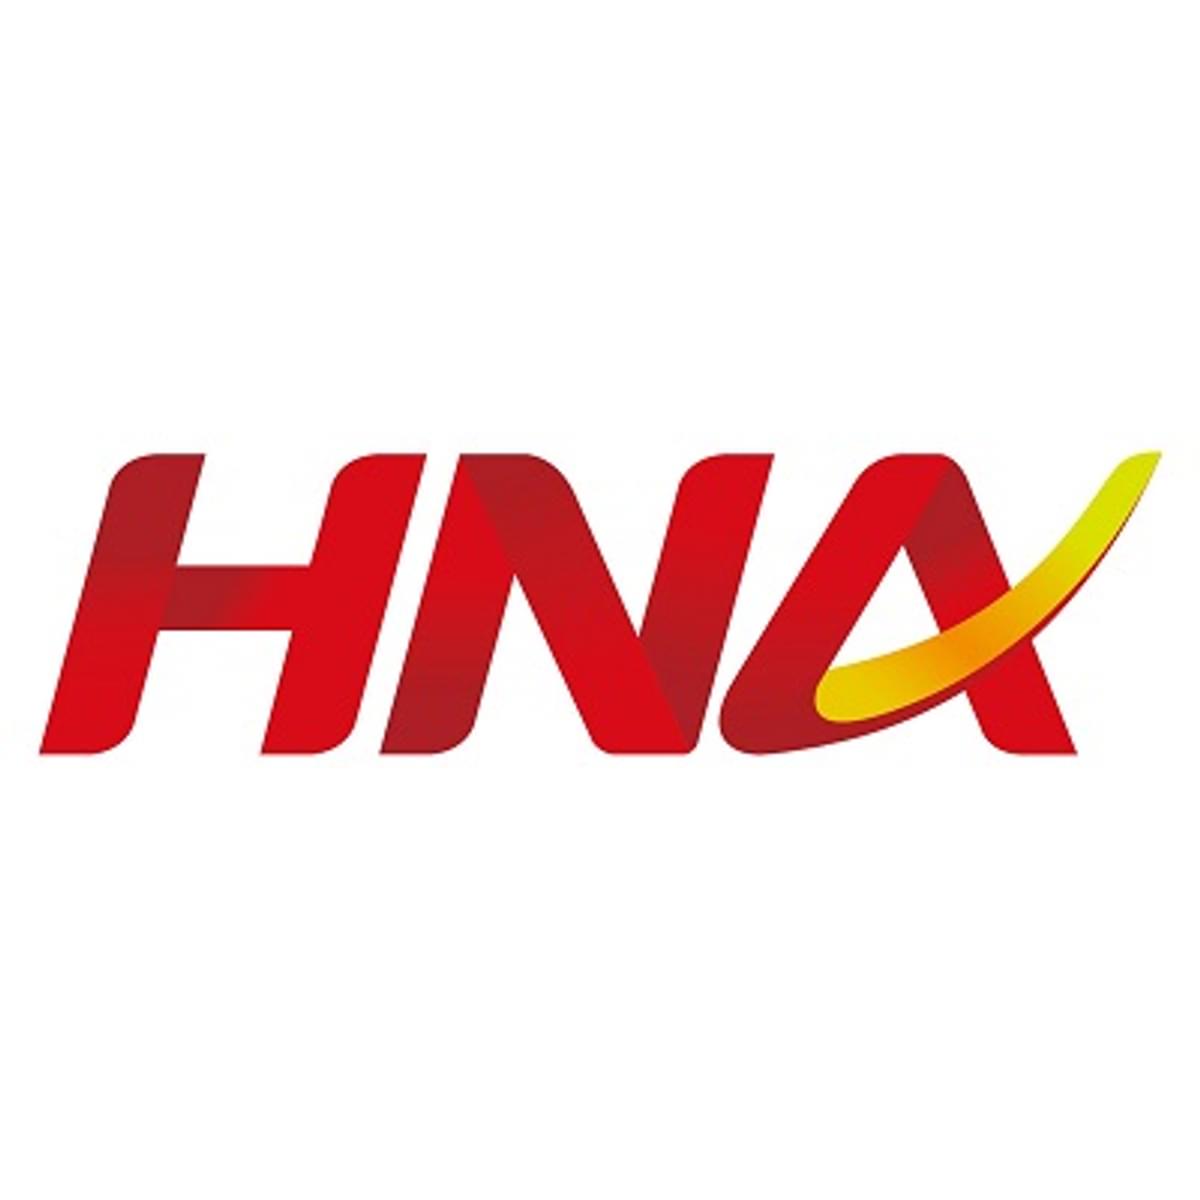 Ingram Micro moederbedrijf HNA kan mogelijk worden genationaliseerd door China image